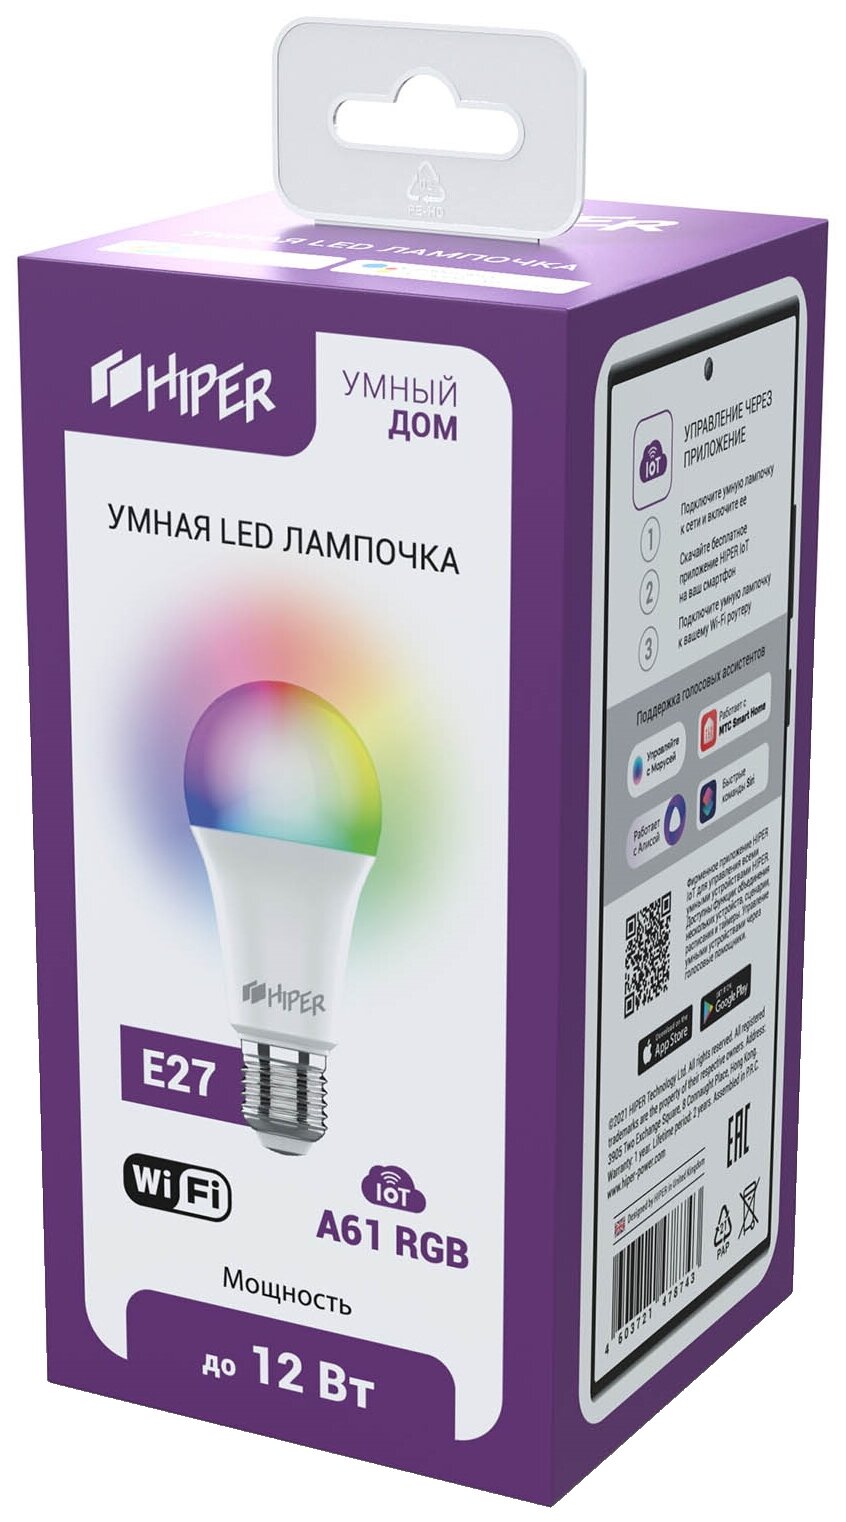 Умная LED E27 лампочка Wi-Fi HIPER IoT A61 RGB цветная (IoT A61 RGB)